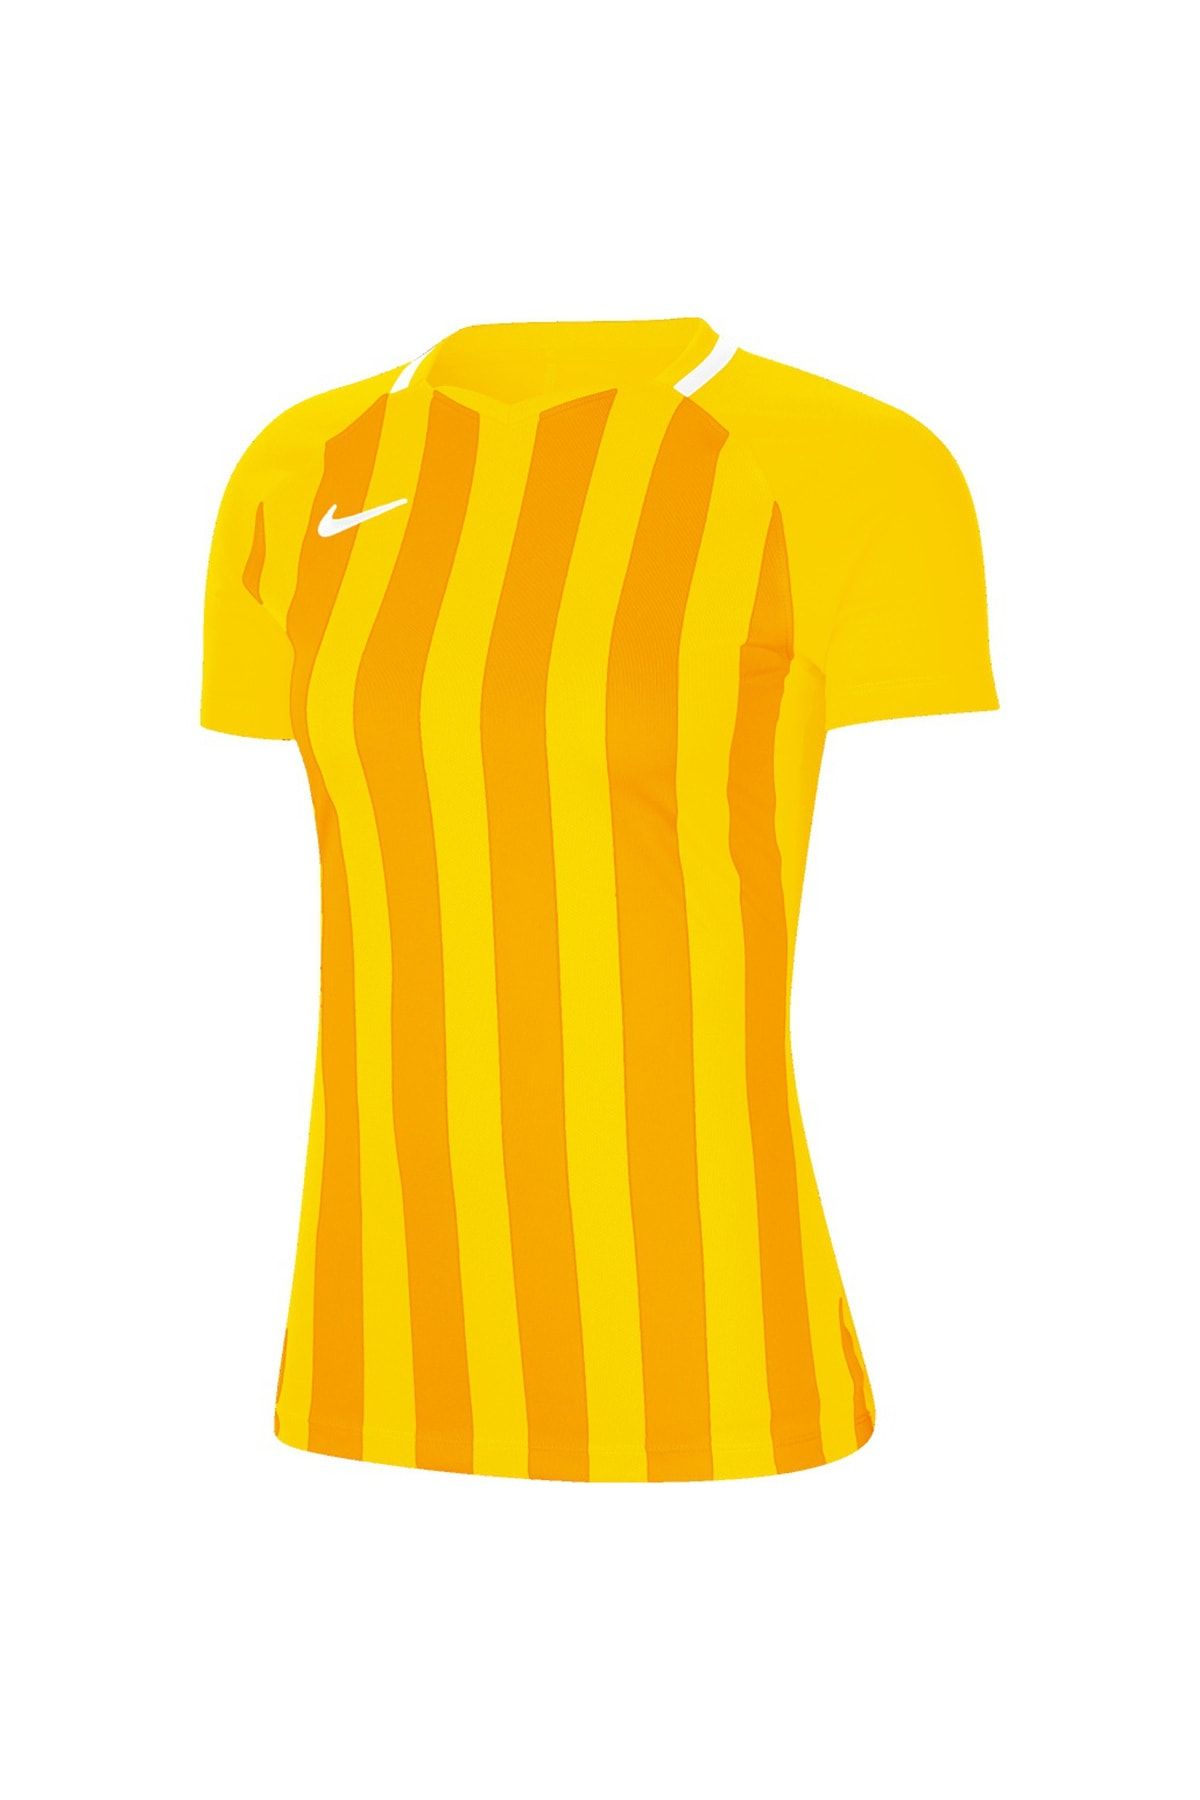 Nike Dri-fit Division Iıı Kadın Sarı Futbol Forma Cn6888-719